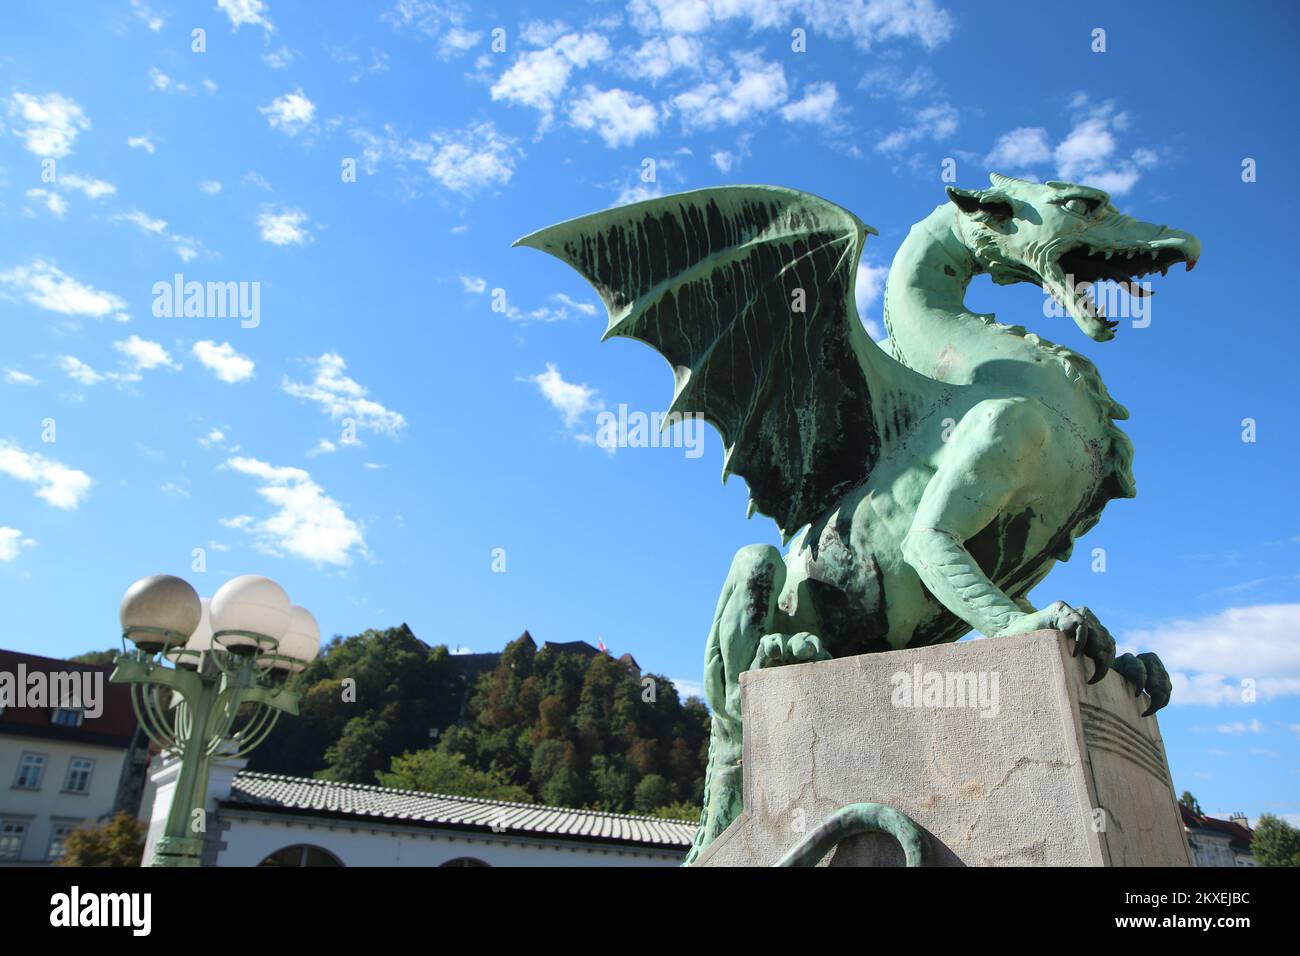 Statua del drago in piedi sul ponte del drago a Lubiana in Slovenia durante la bella e soleggiata giornata. Foto Stock